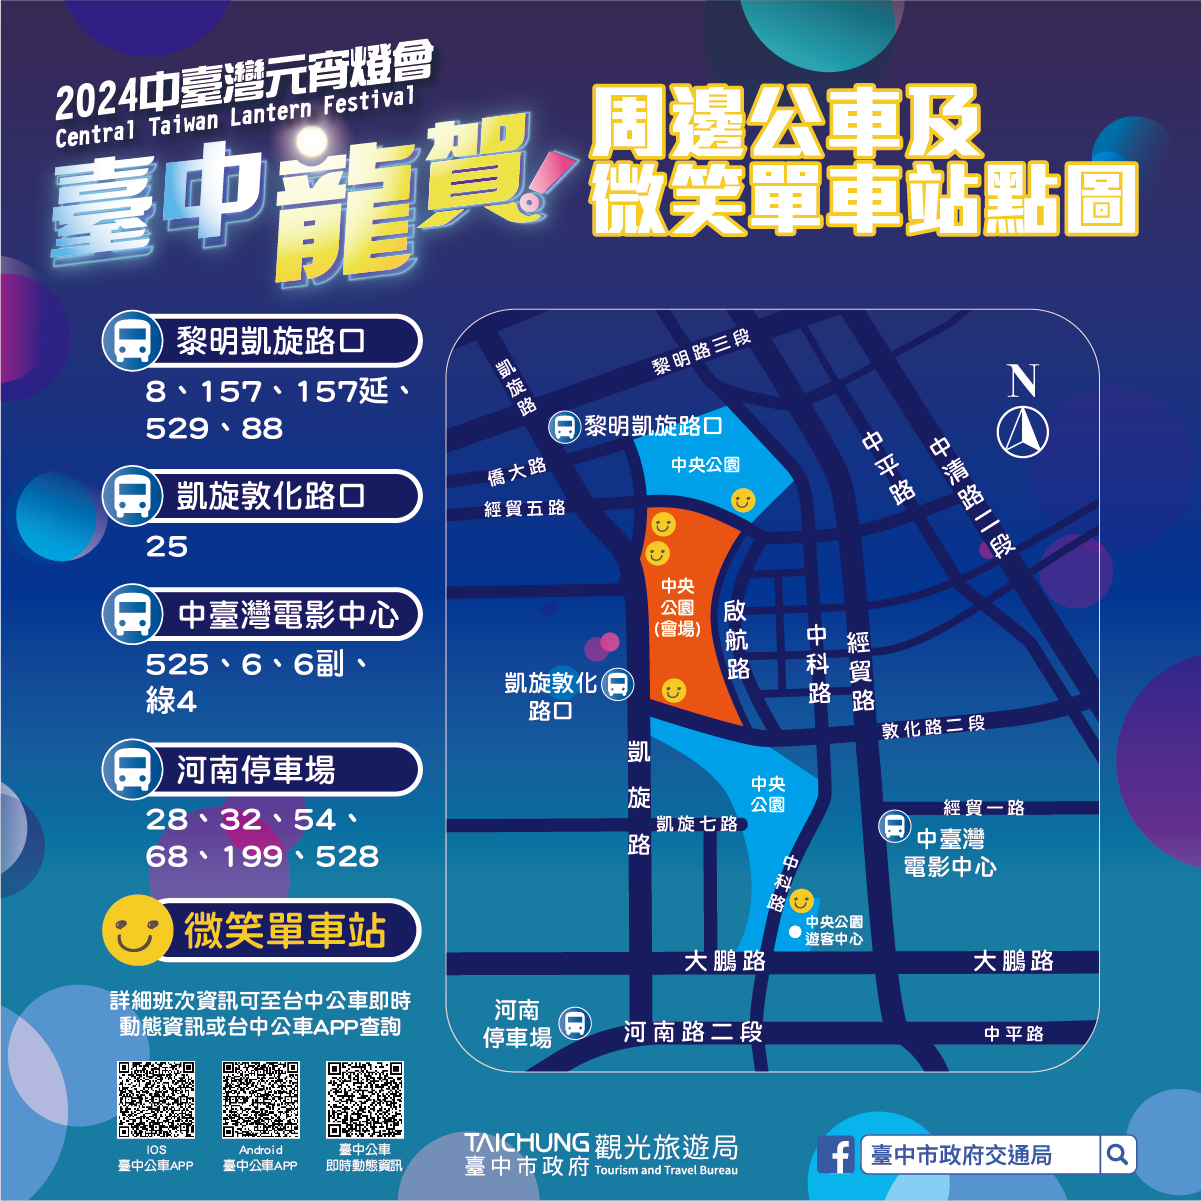 中台灣元宵燈會延長3天 228假日接駁車同步提供服務